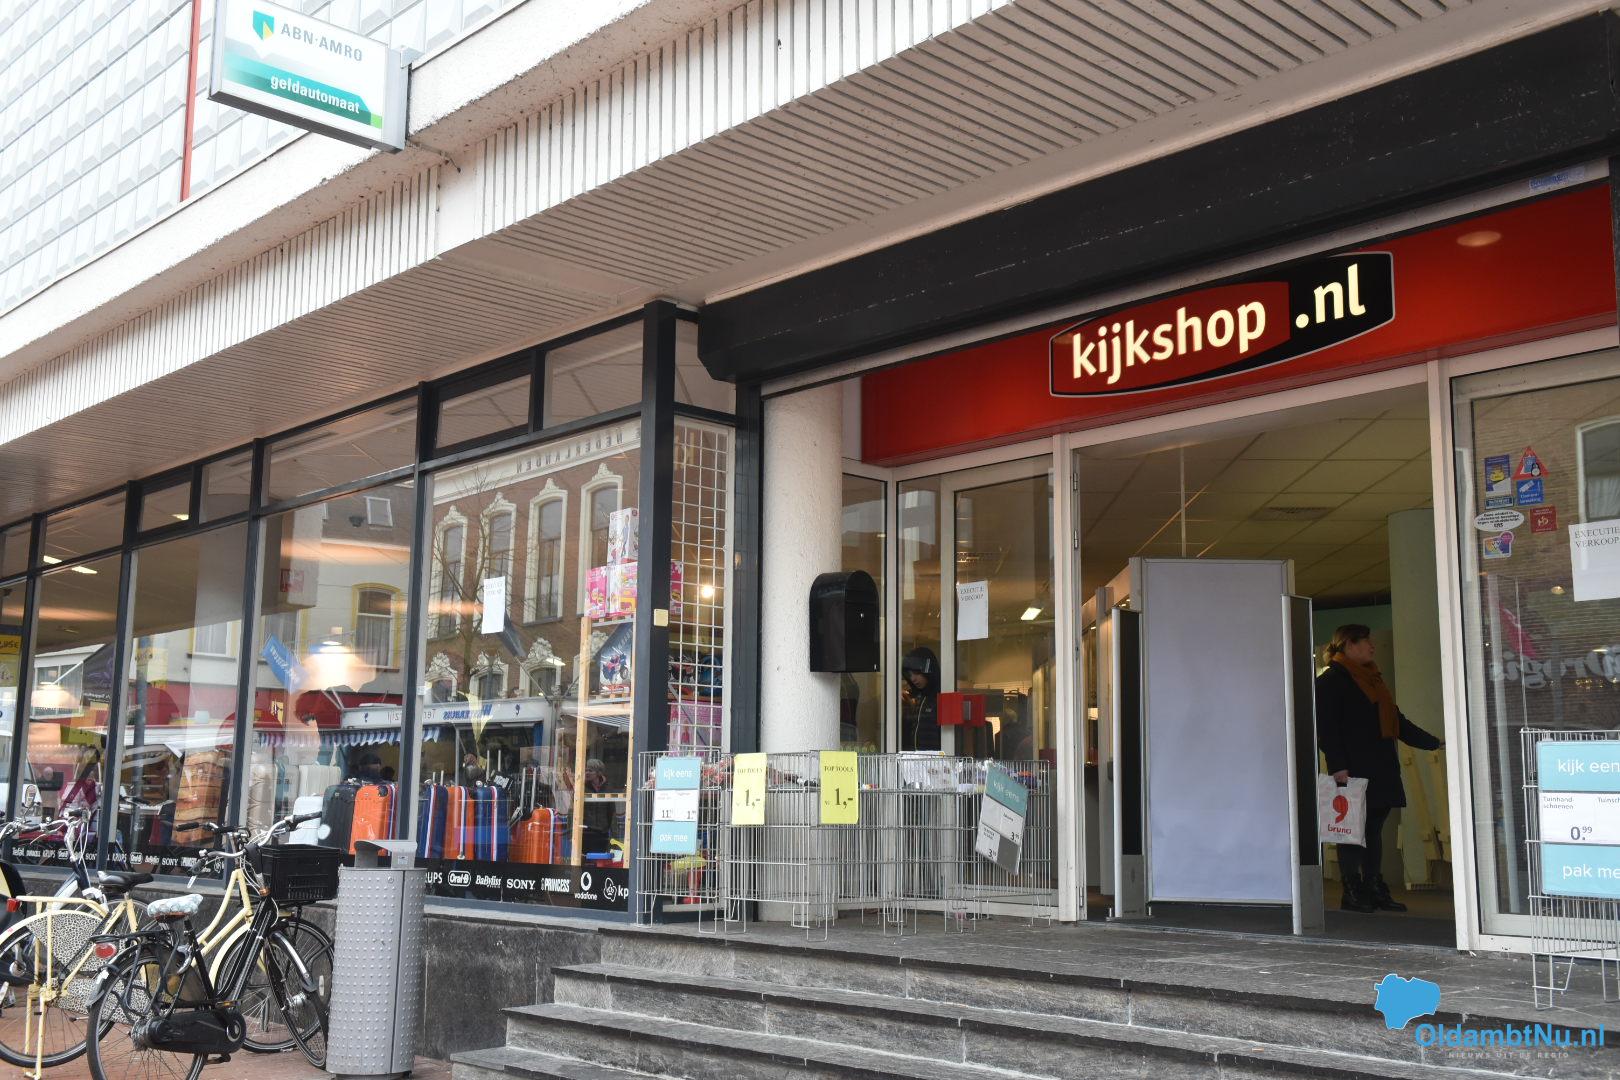 Kijkshop sluit zijn deuren na faillissement OldambtNu.nl